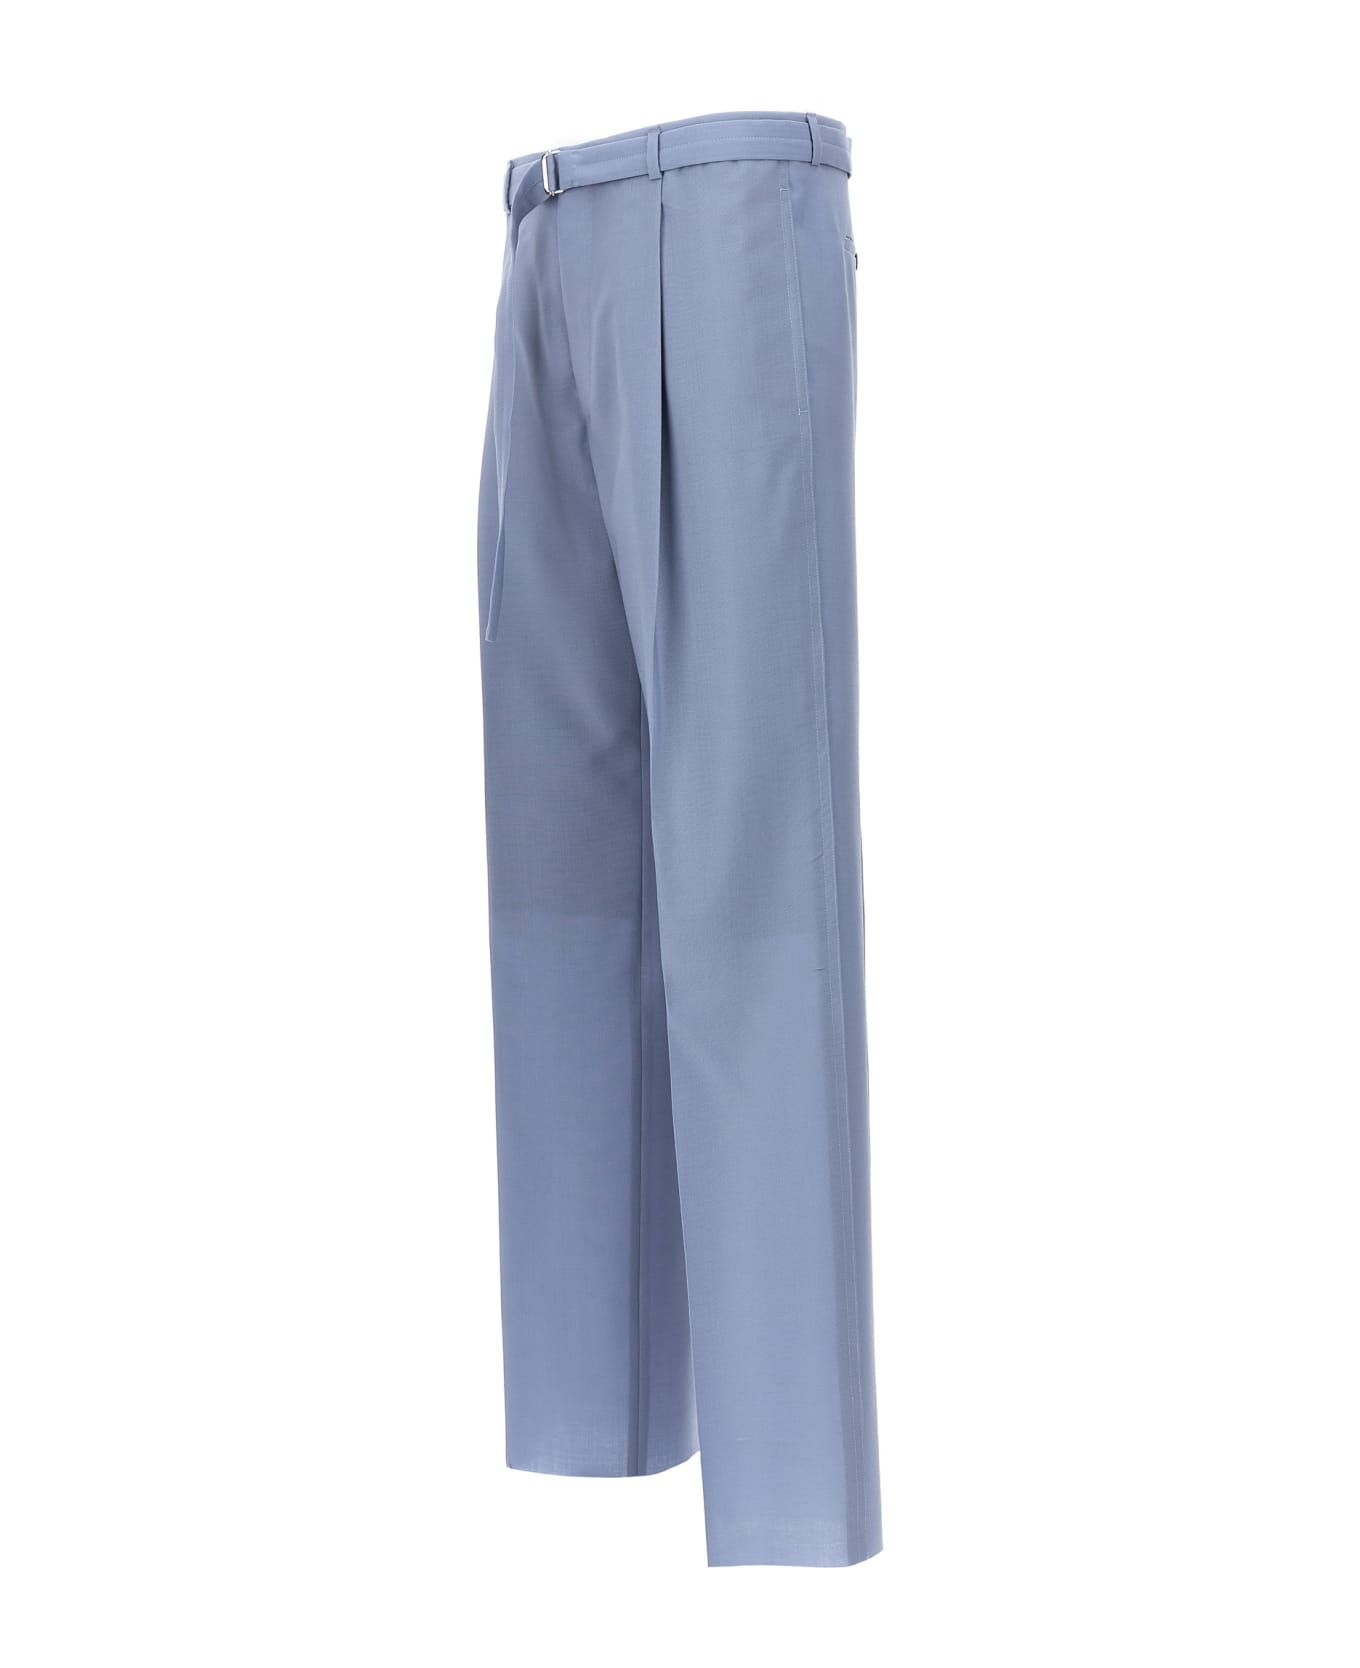 Lanvin Front Pleat Pants - Light Blue